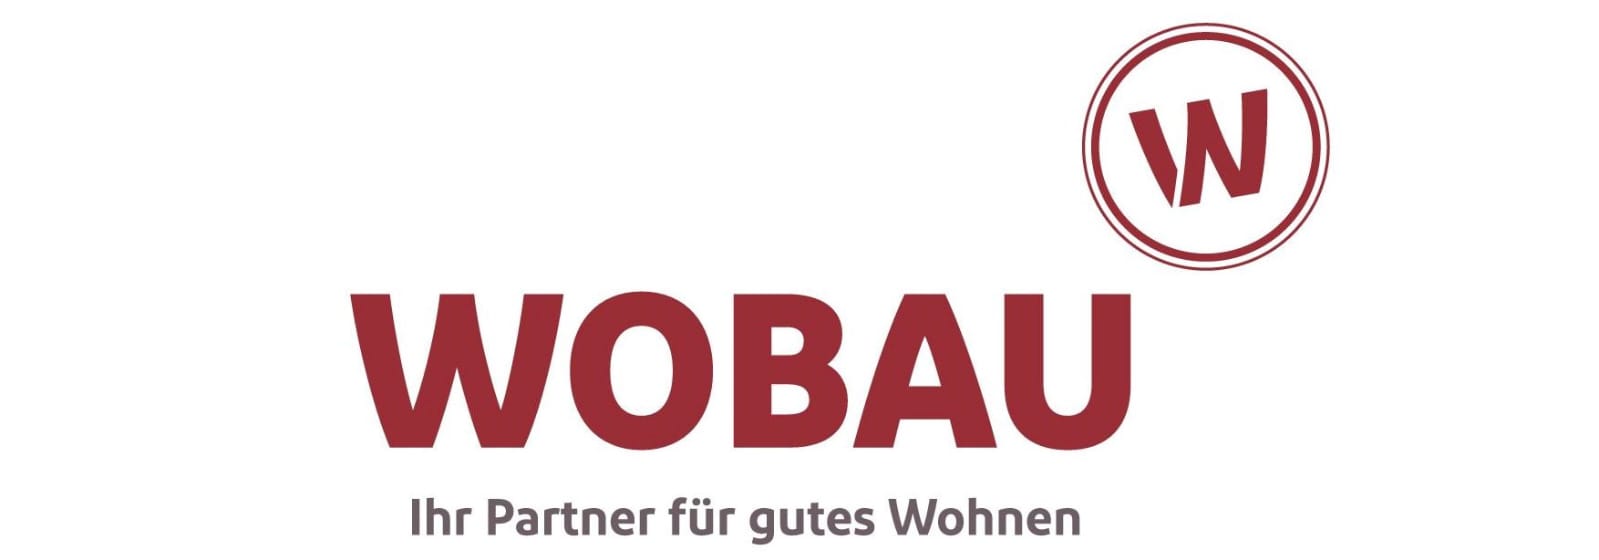 wobau logo